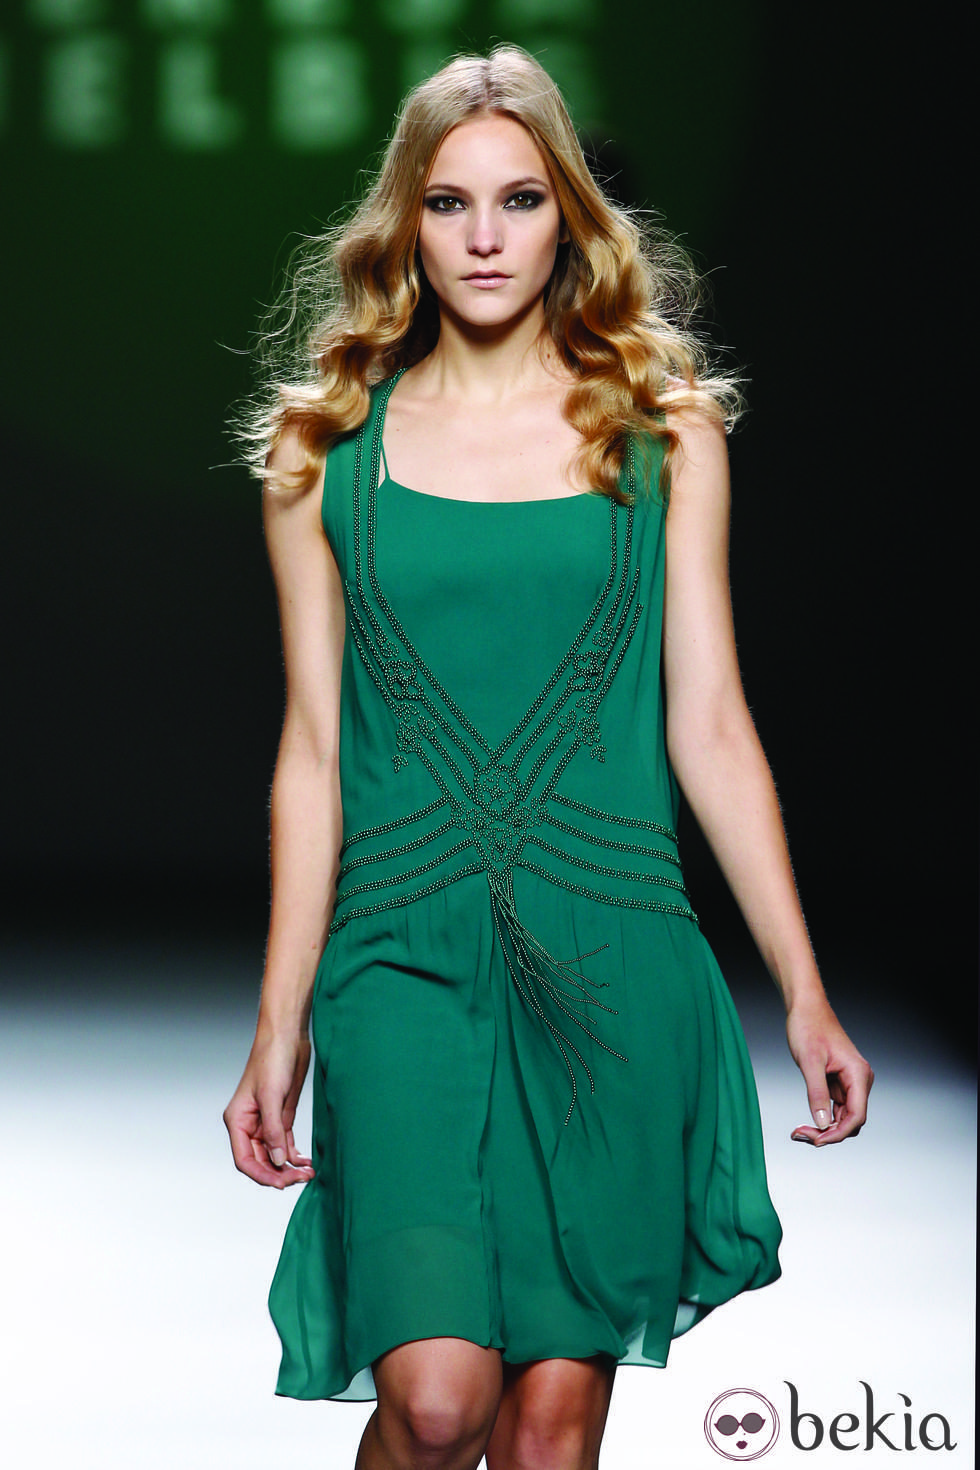 Vestido vaporoso en verde de la colección otoño/invierno 2012/2013 de Teresa Helbig